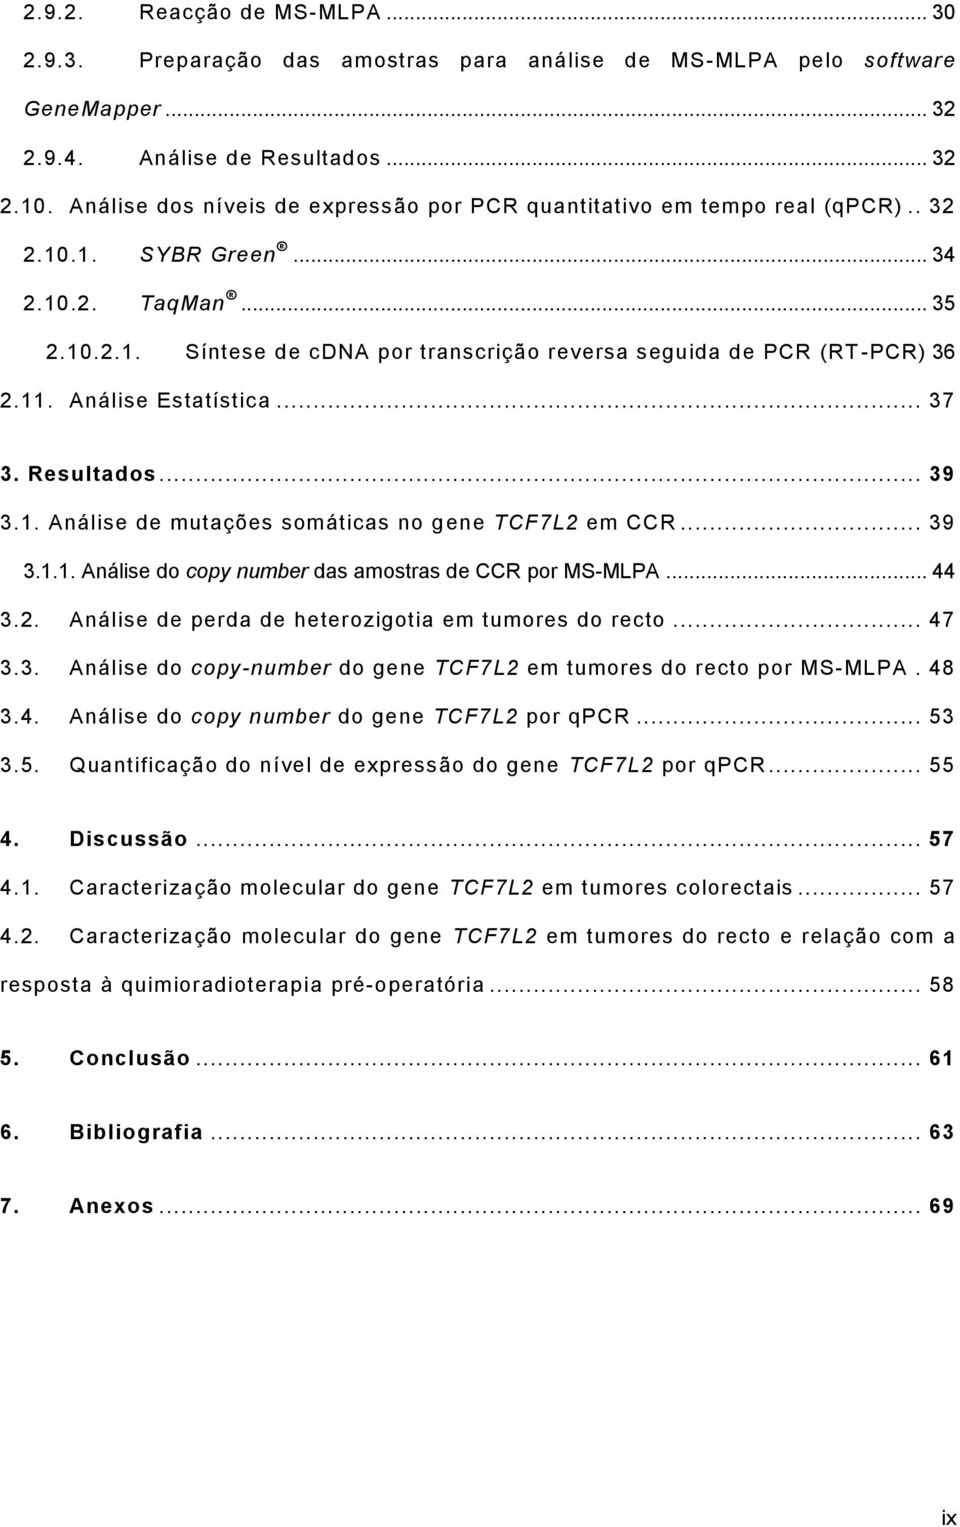 11. Análise Estatística... 37 3. Resultados... 39 3.1. Análise de mutações somáticas no gene TCF7L2 em CCR... 39 3.1.1. Análise do copy number das amostras de CCR por MS-MLPA... 44 3.2. Análise de perda de heterozigotia em tumores do recto.